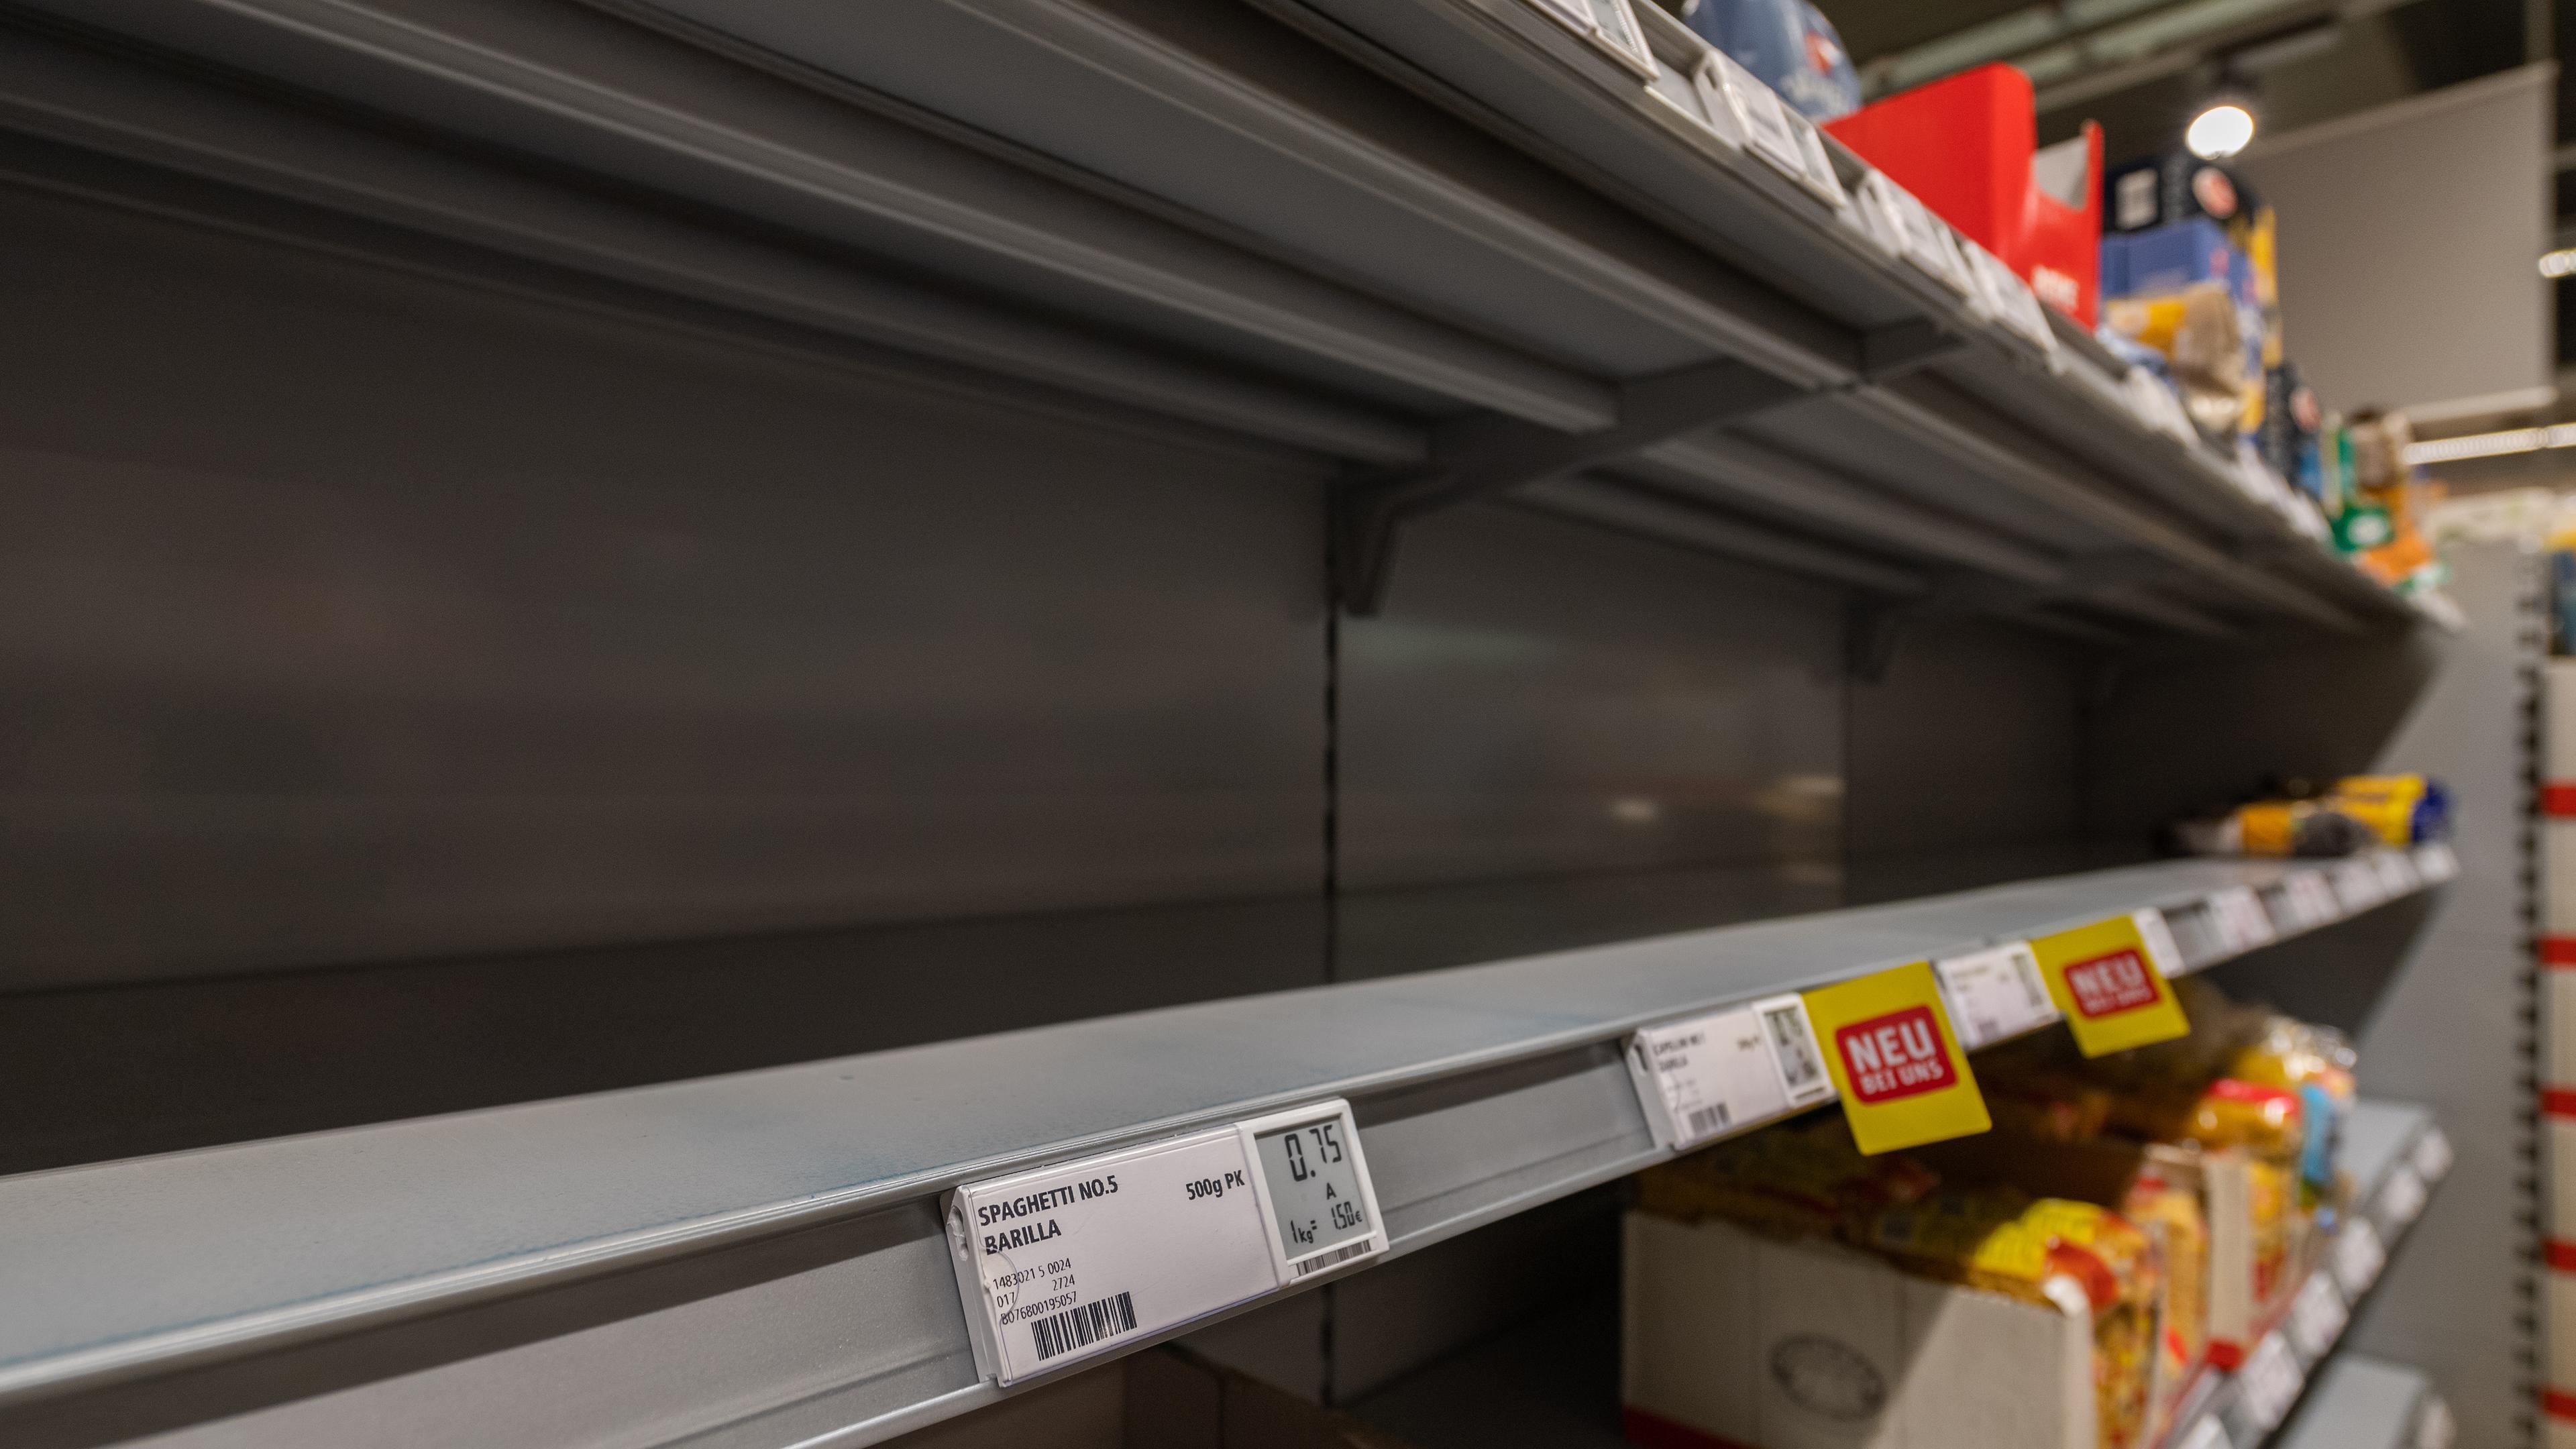 Archiv: Ein fast leeres Regal im Bereich der Teigwaren sind in einem Supermarkt zu sehen, aufgenommen am 14.03.2020